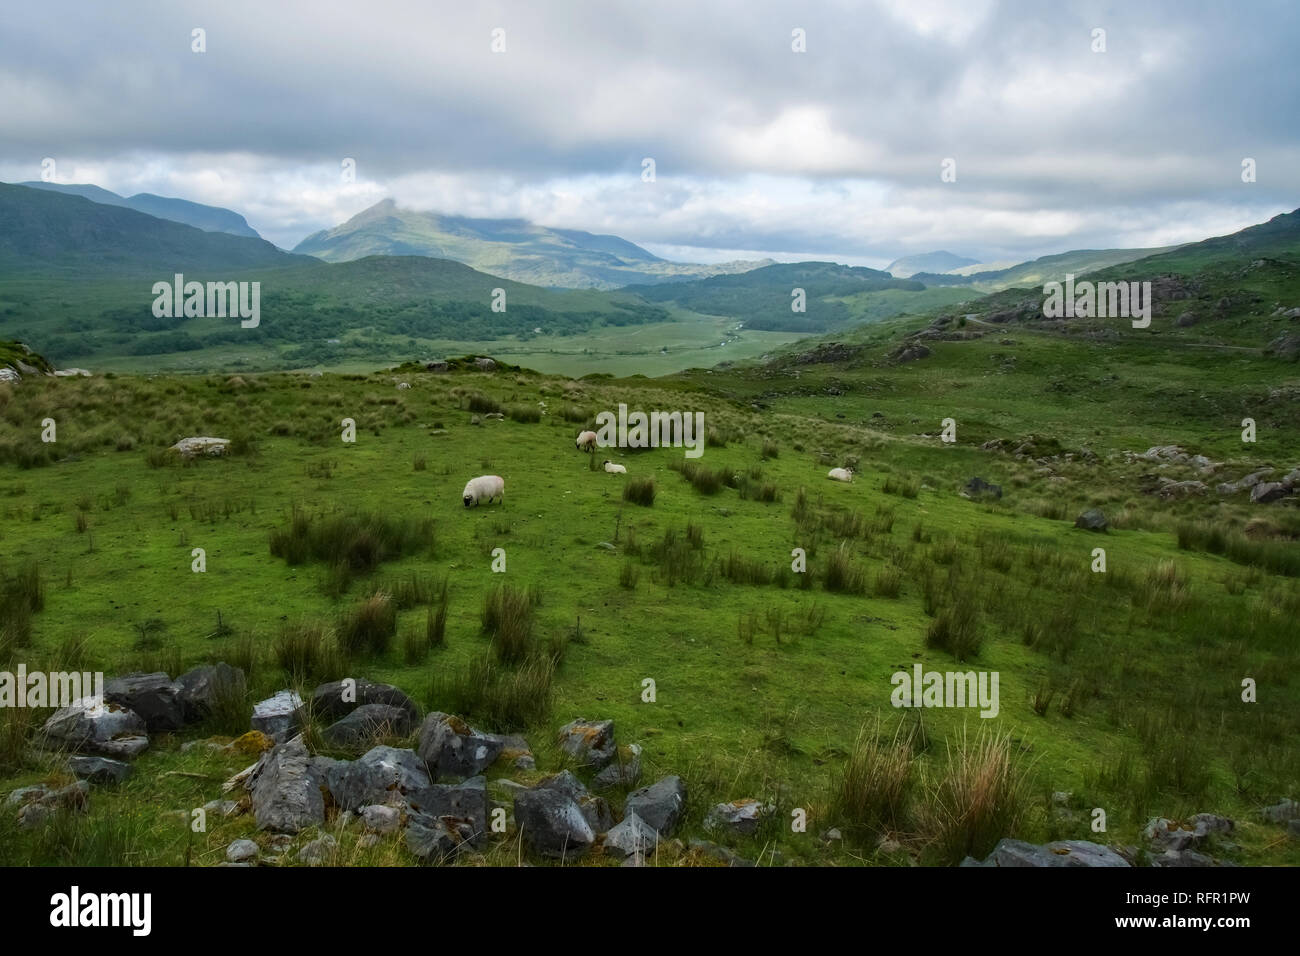 Irish Pasture with Sheep Stock Photo